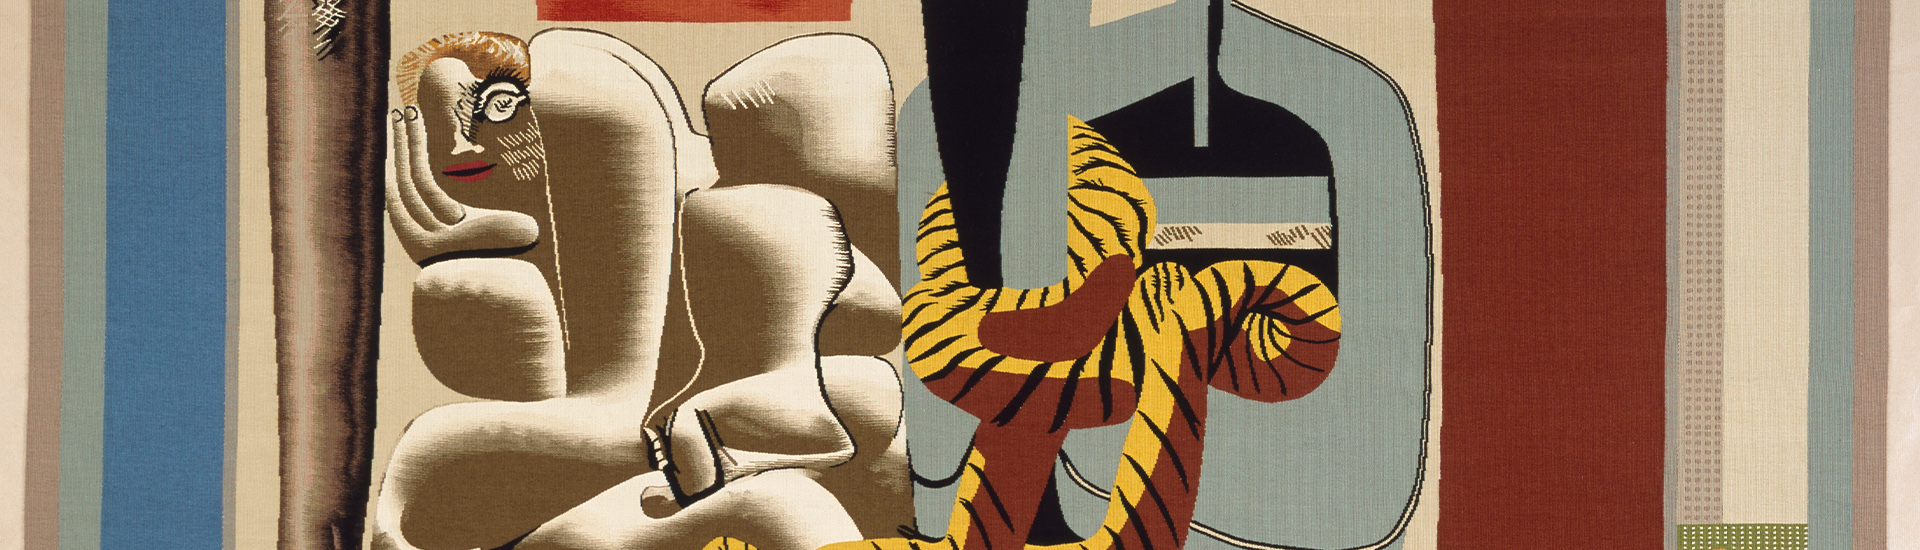 Le Corbusier, Marie Cuttoli, 1936 (retissage, détail) © FLC / ADAGP